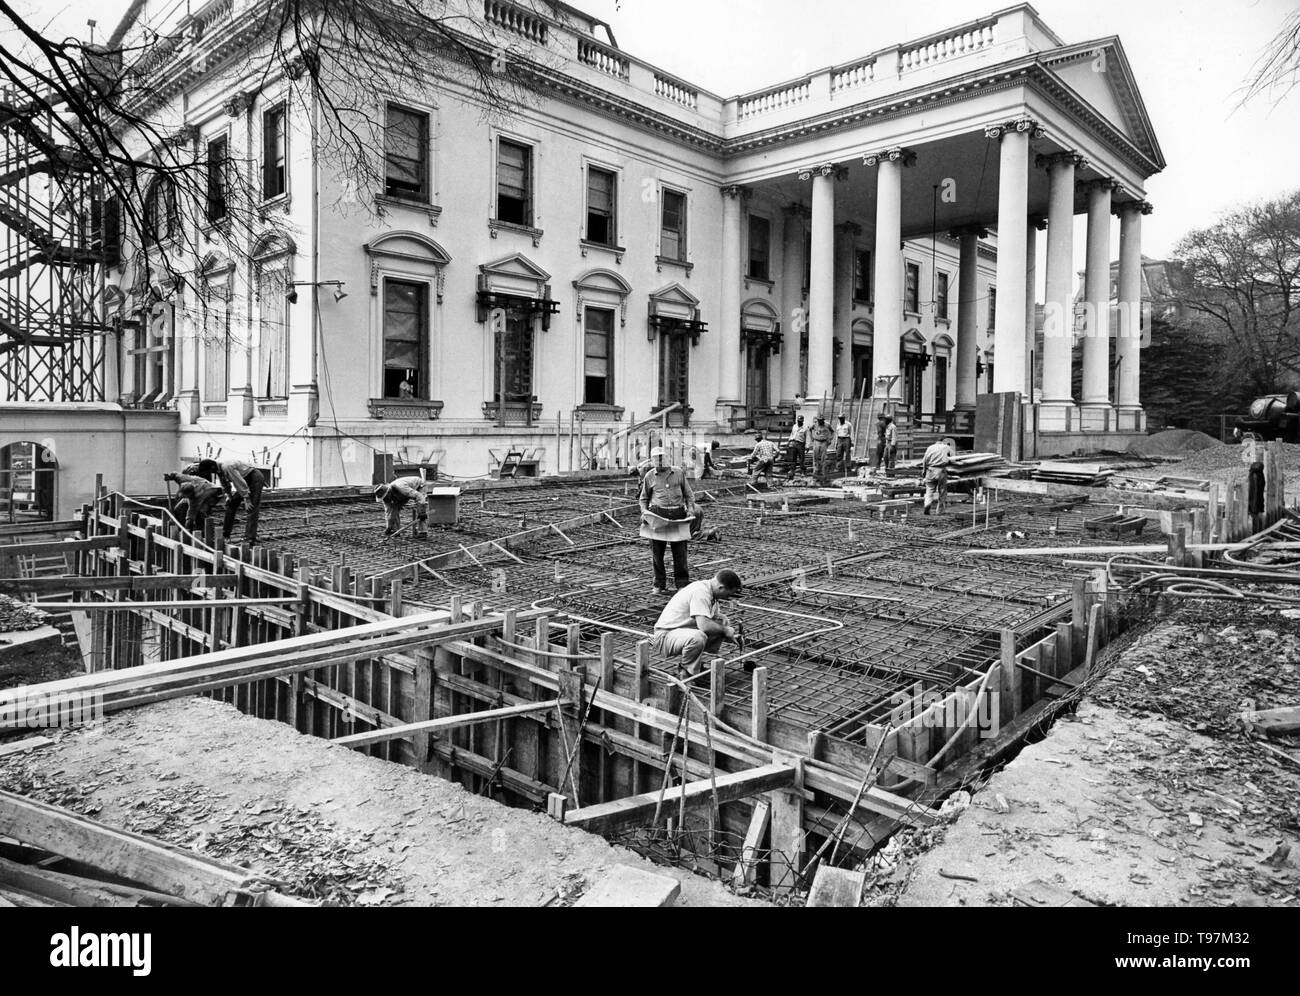 Vue de l'angle nord-est de la Maison Blanche pendant la rénovation, 11/06/1950 Banque D'Images